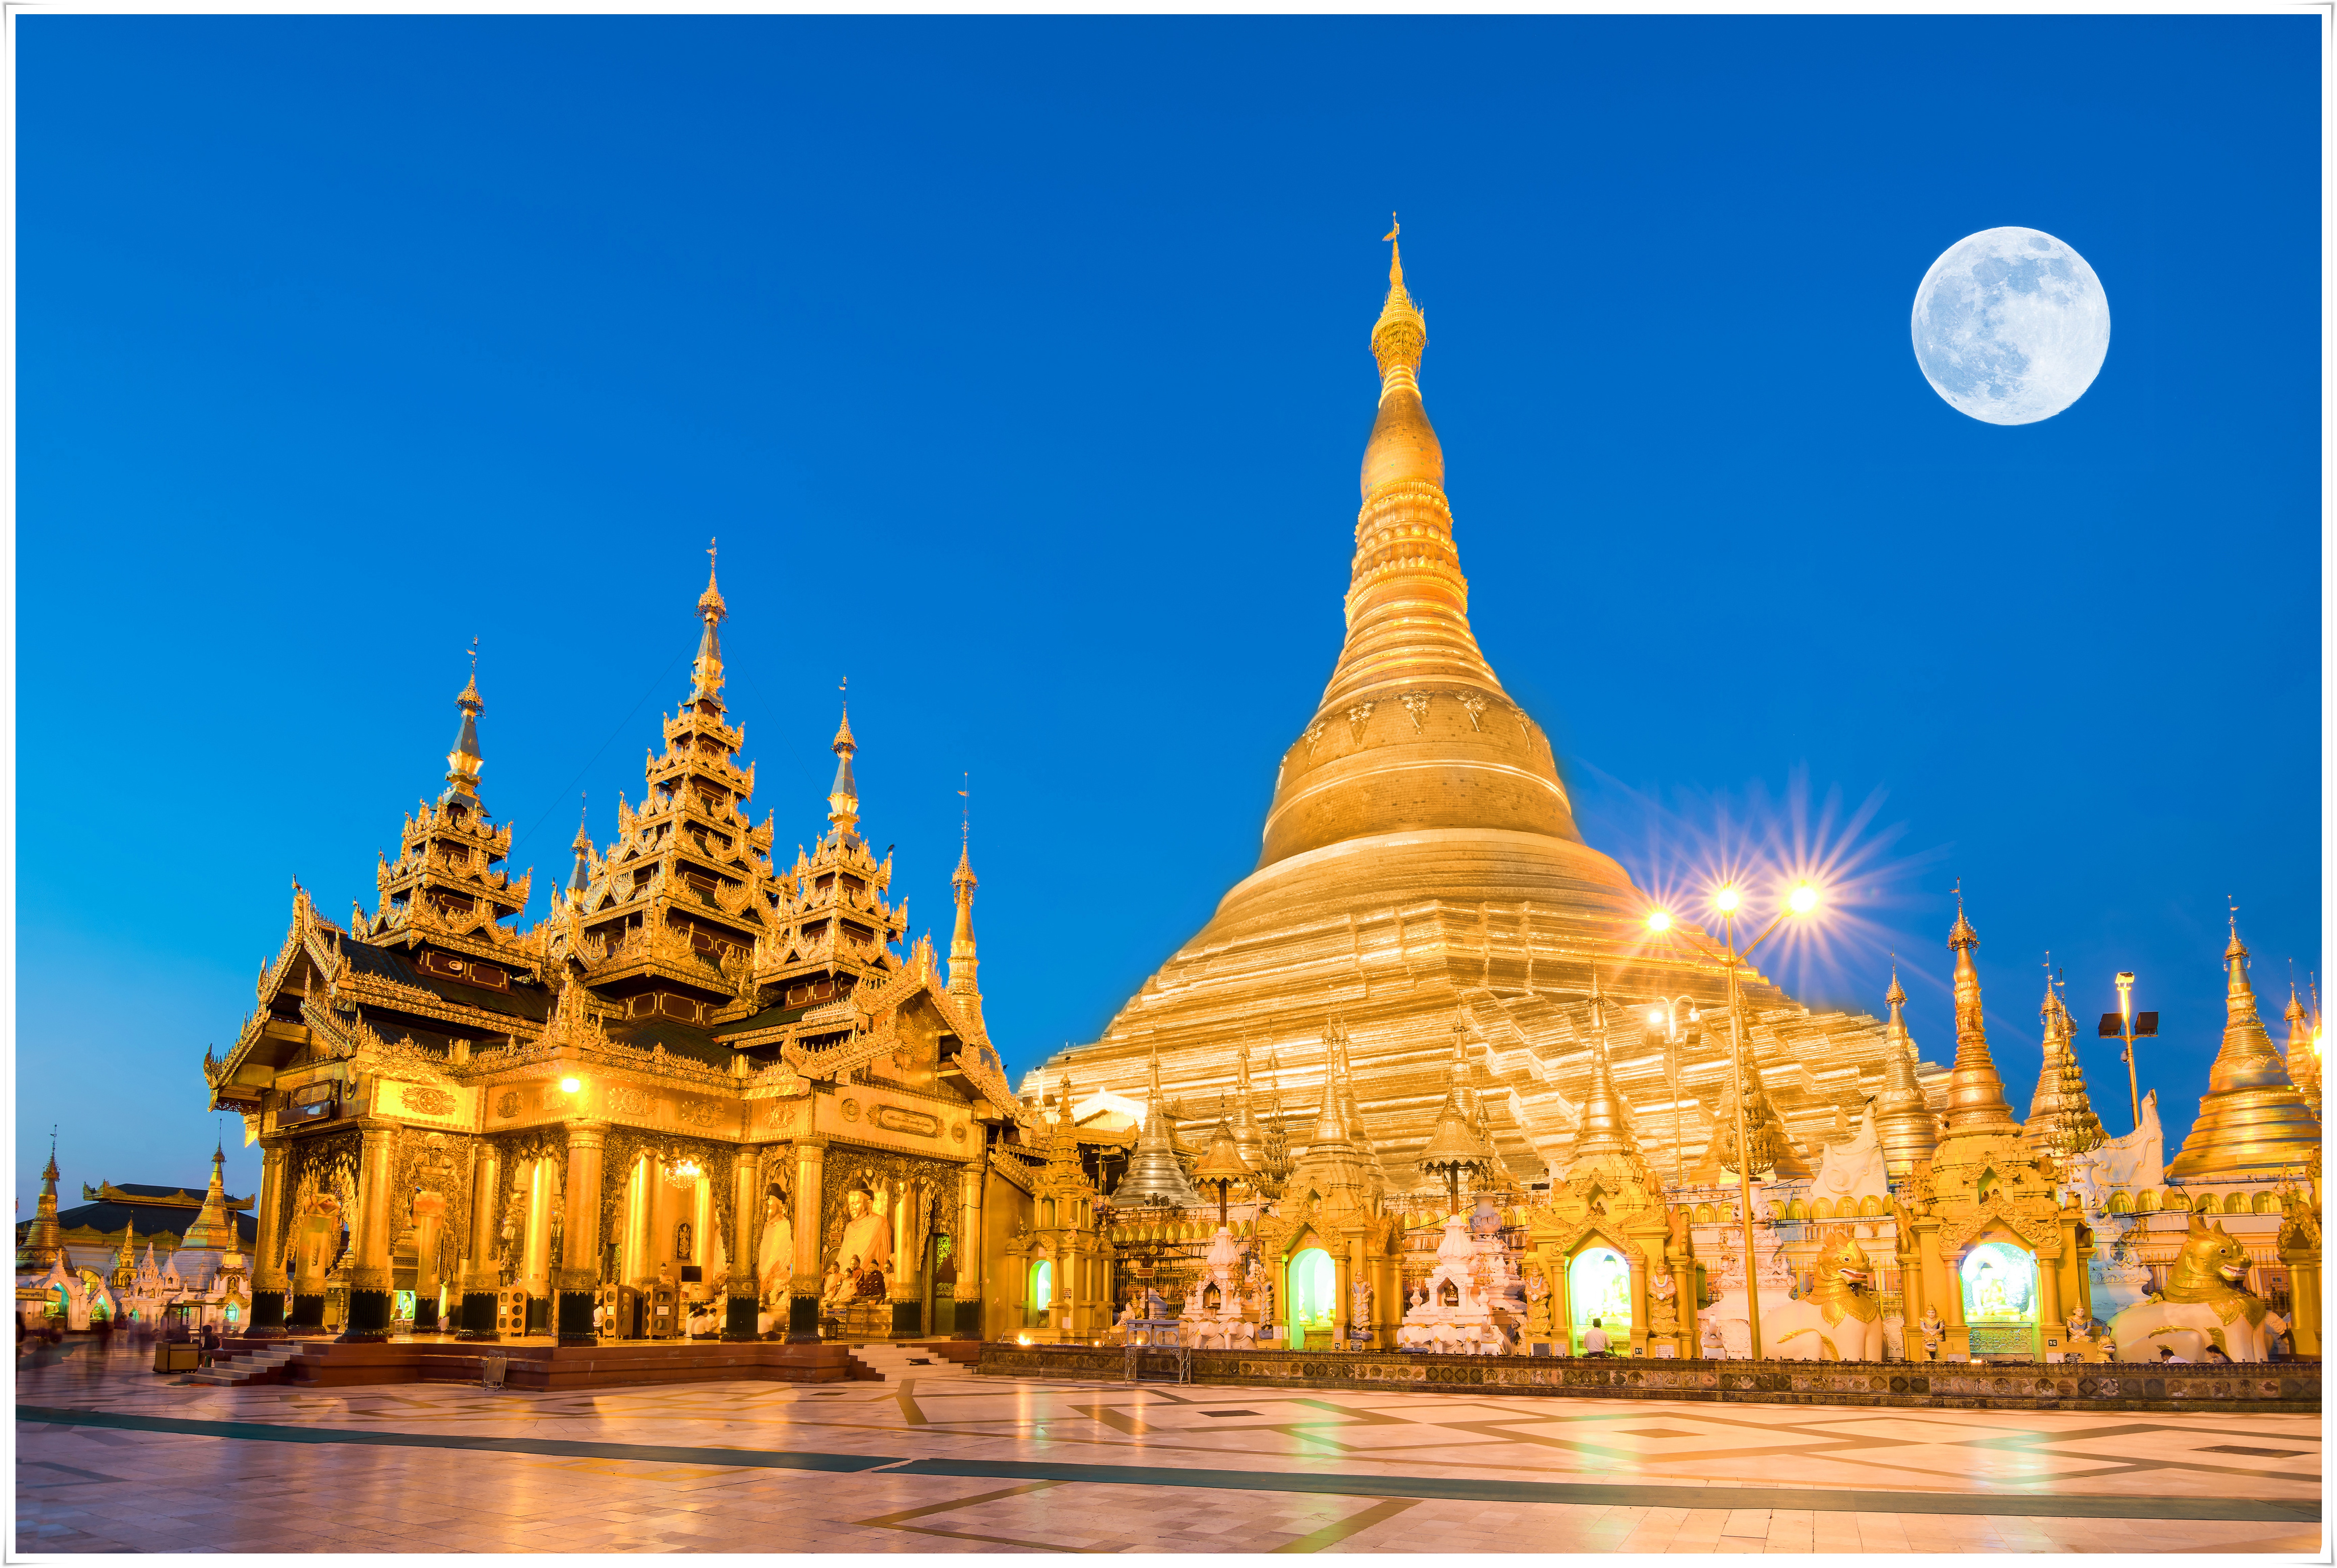 ทัวร์พม่า Go Myanmar มูเตลู บูชาสิ่งศักดิ์สิทธ์ 1 วัน (DEC18) GO1RGN-DD005